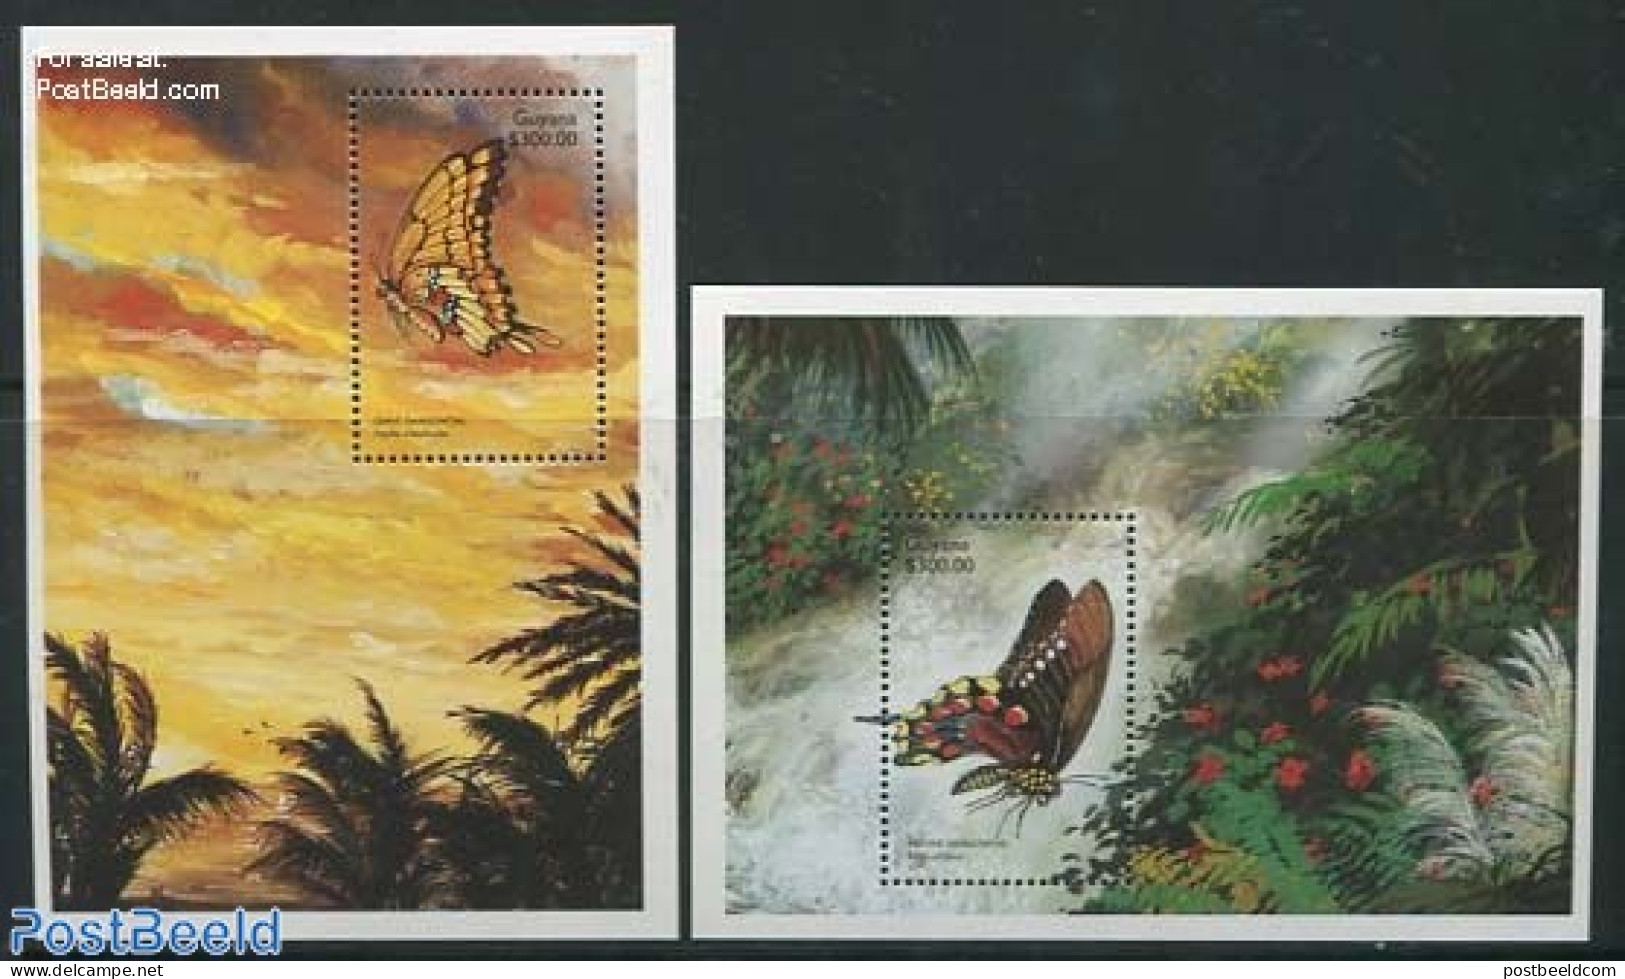 Guyana 1999 Butterflies 2 S/s, Mint NH, Nature - Butterflies - Guyana (1966-...)